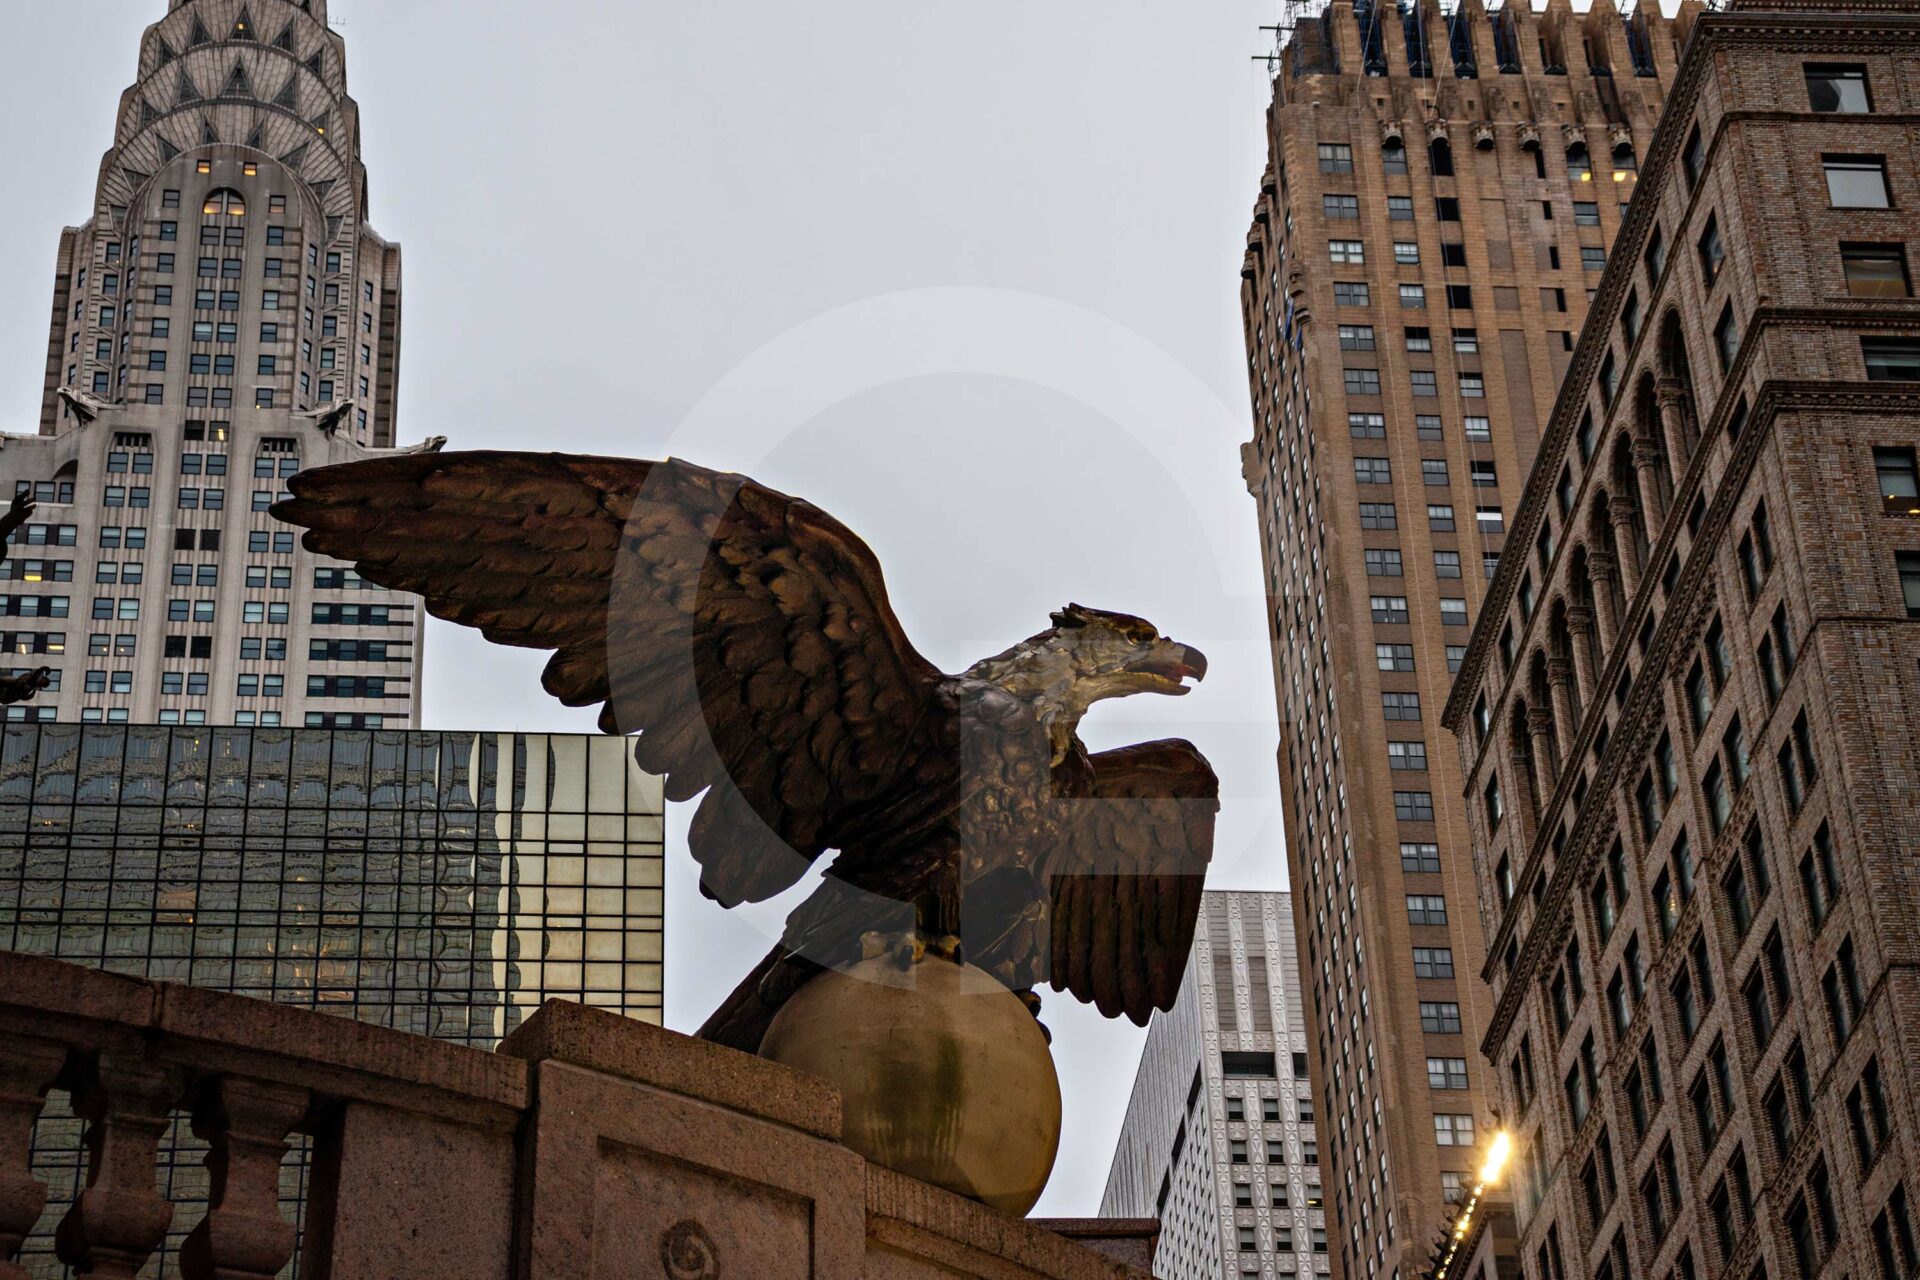 eagle statue in a city